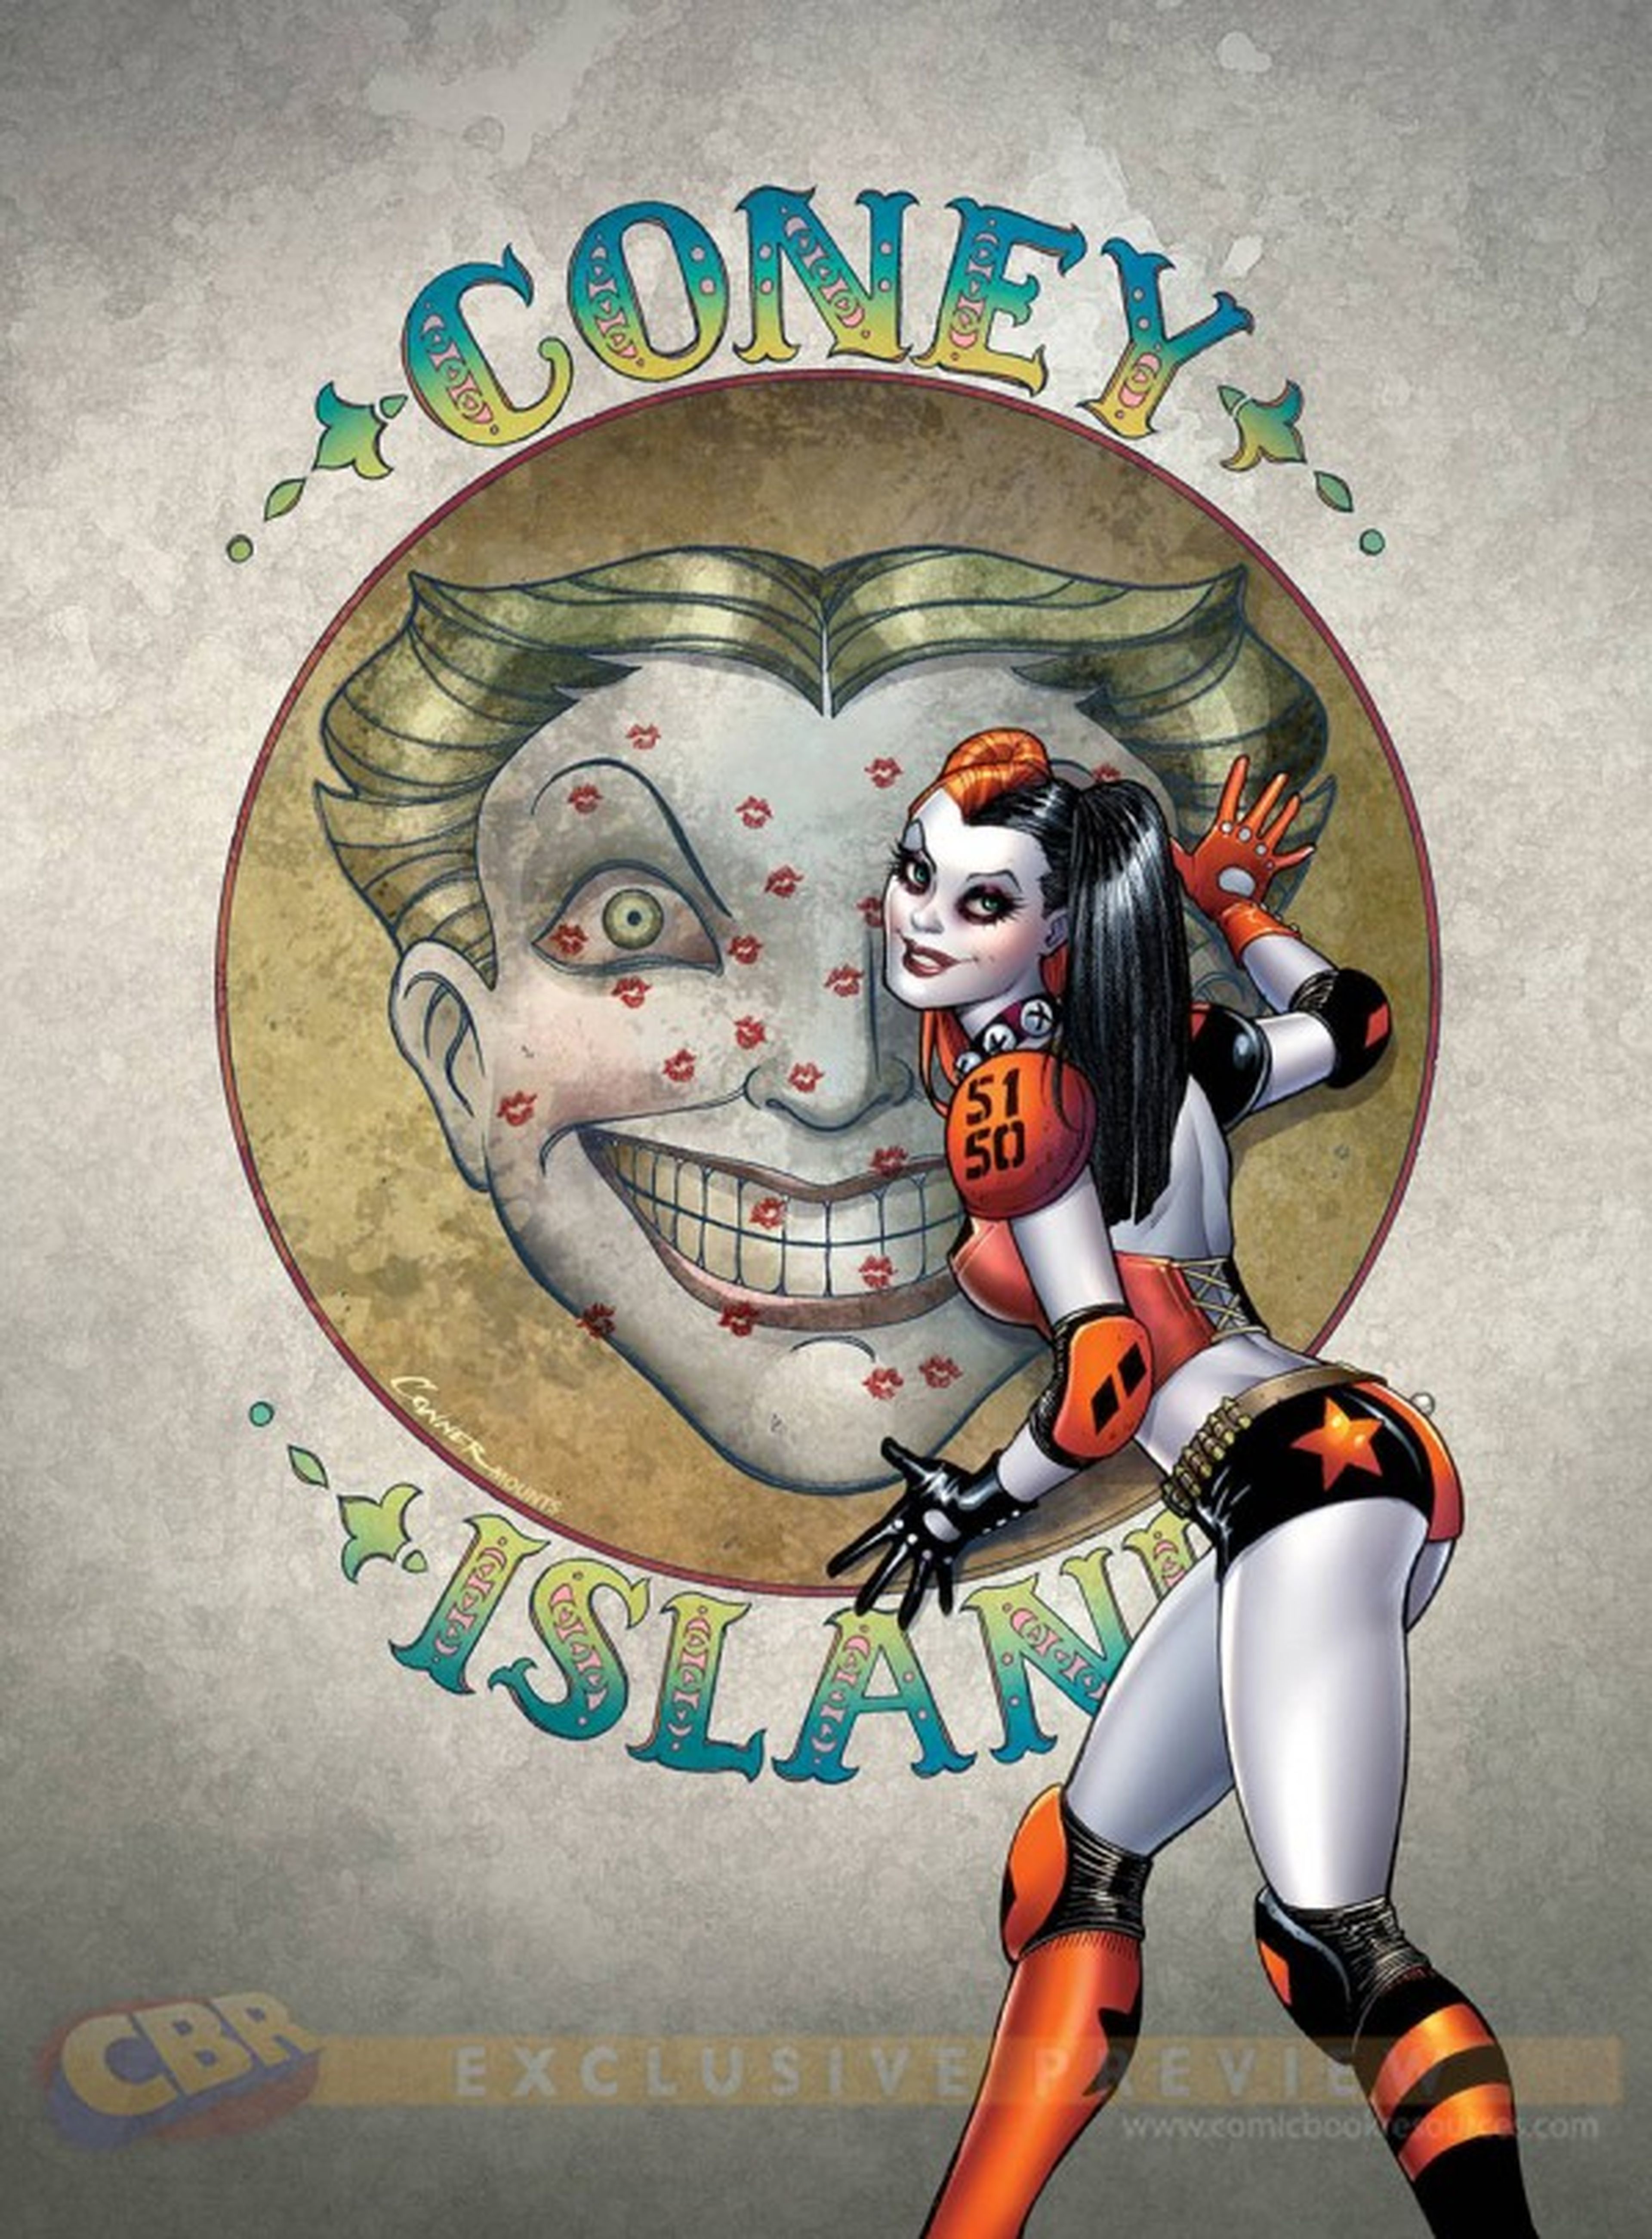 Harley Quinn protagonizará su propio cómic